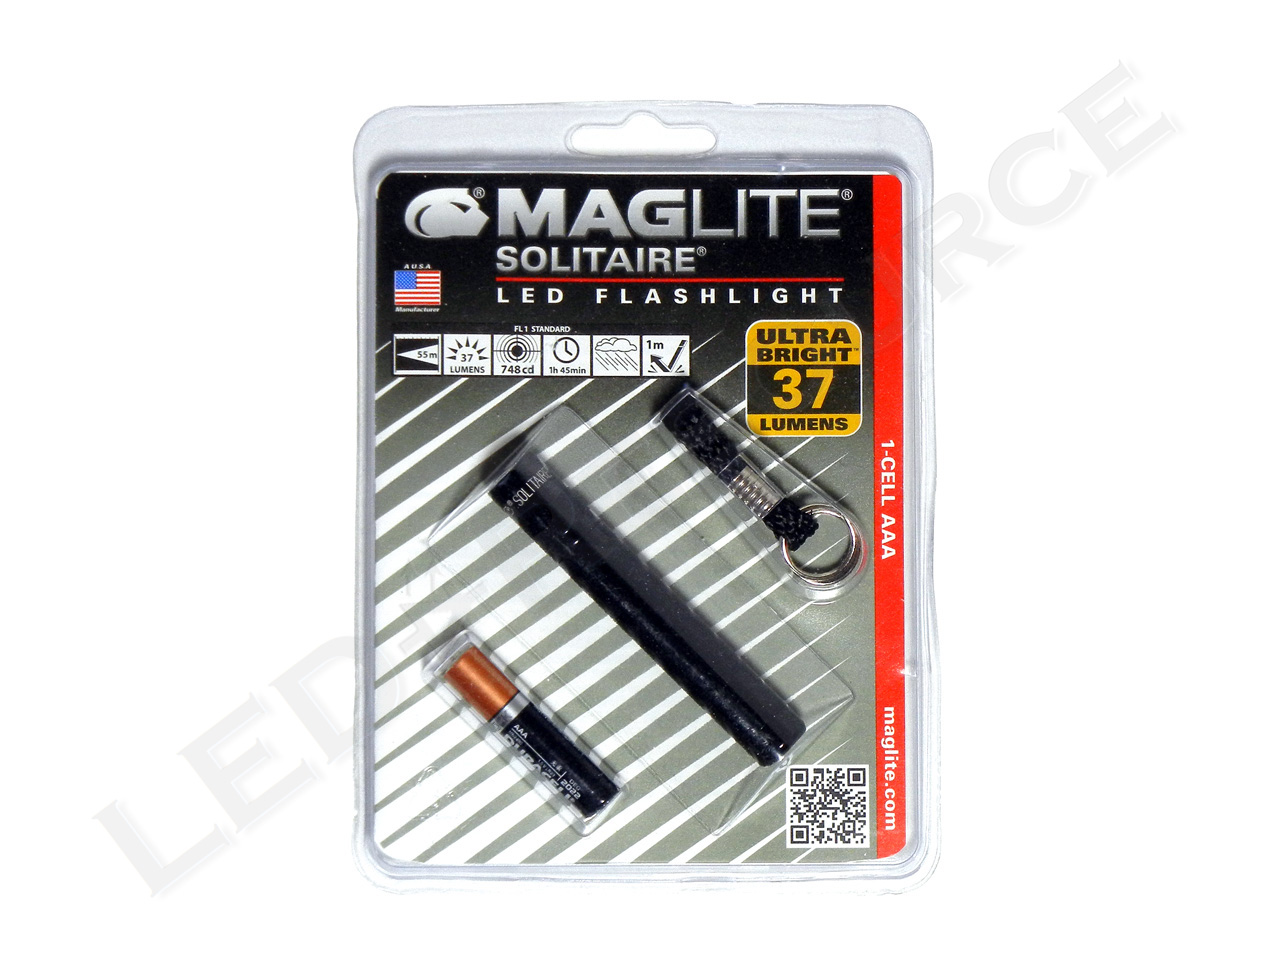 kaldenavn excentrisk Creep Maglite Solitaire LED Flashlight Review - LED-Resource